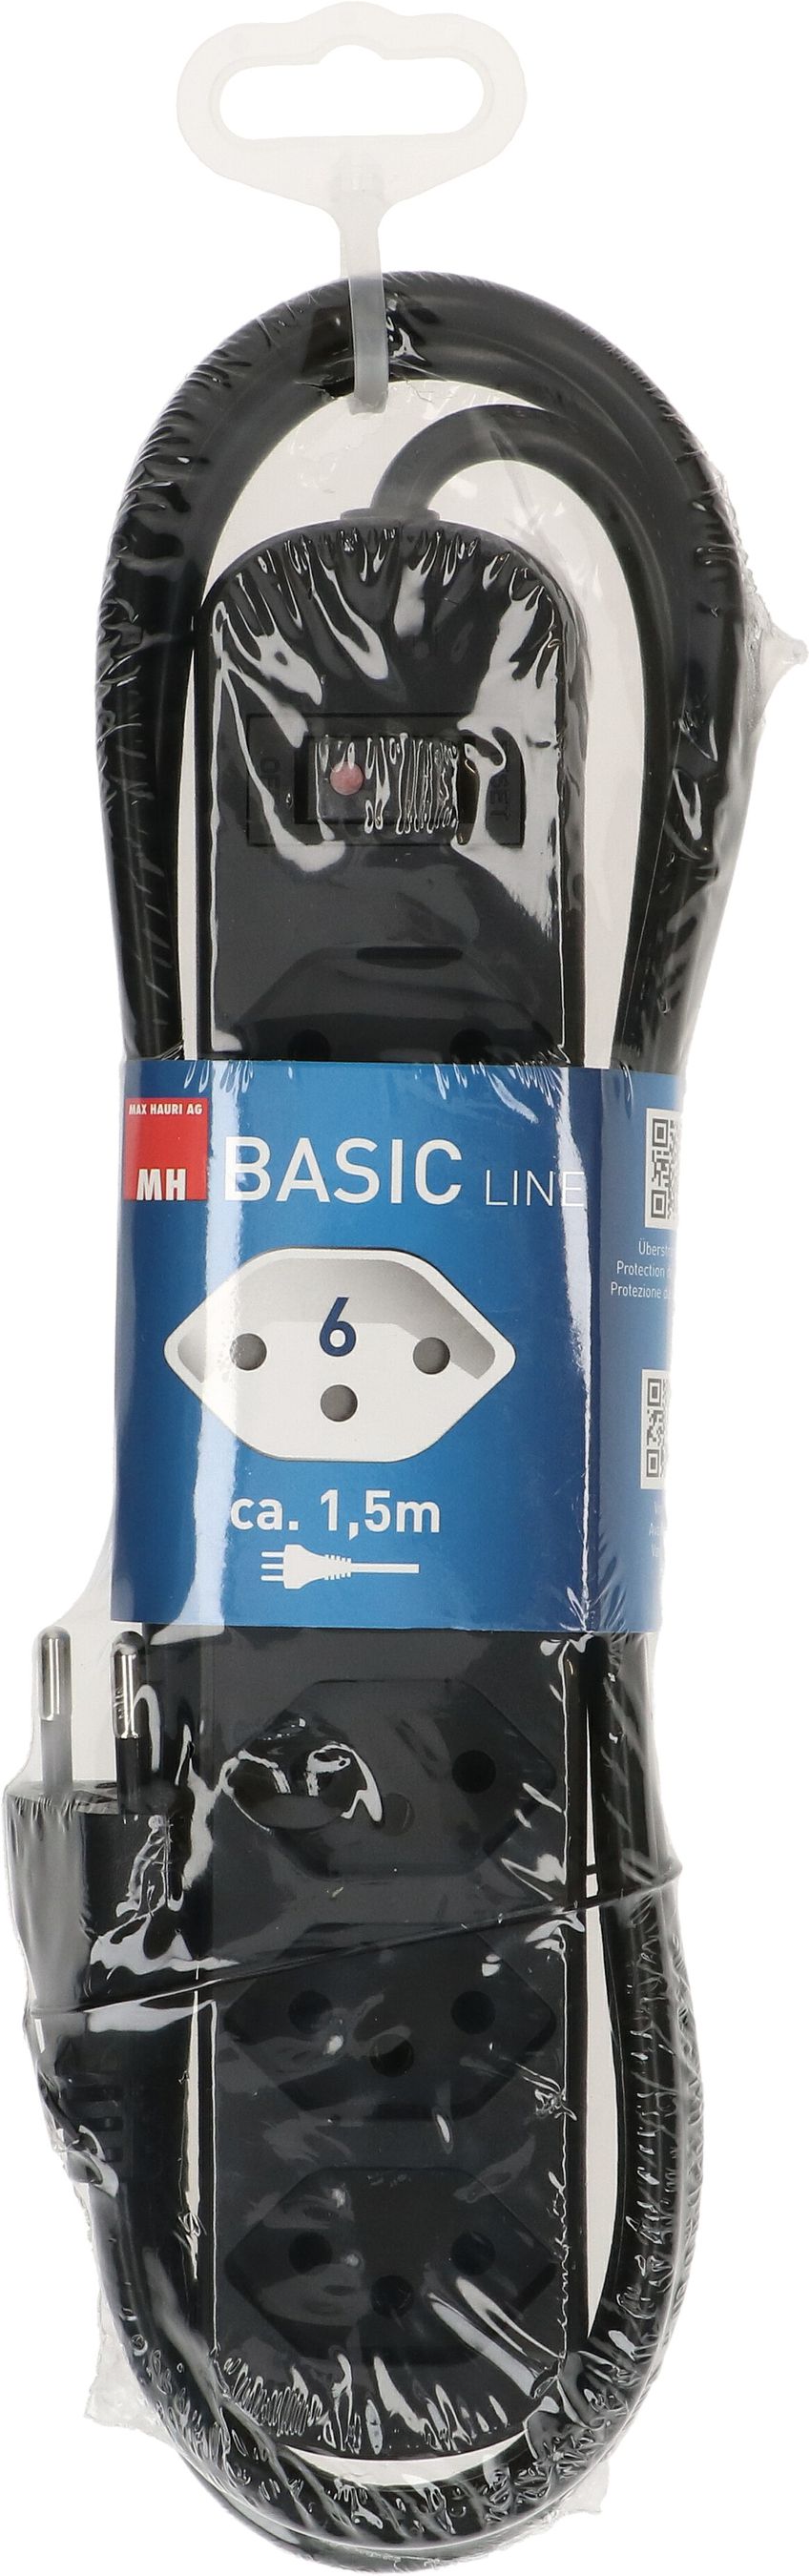 multiprise Basic Line 6x type 13 noir interrupteur 1.5m